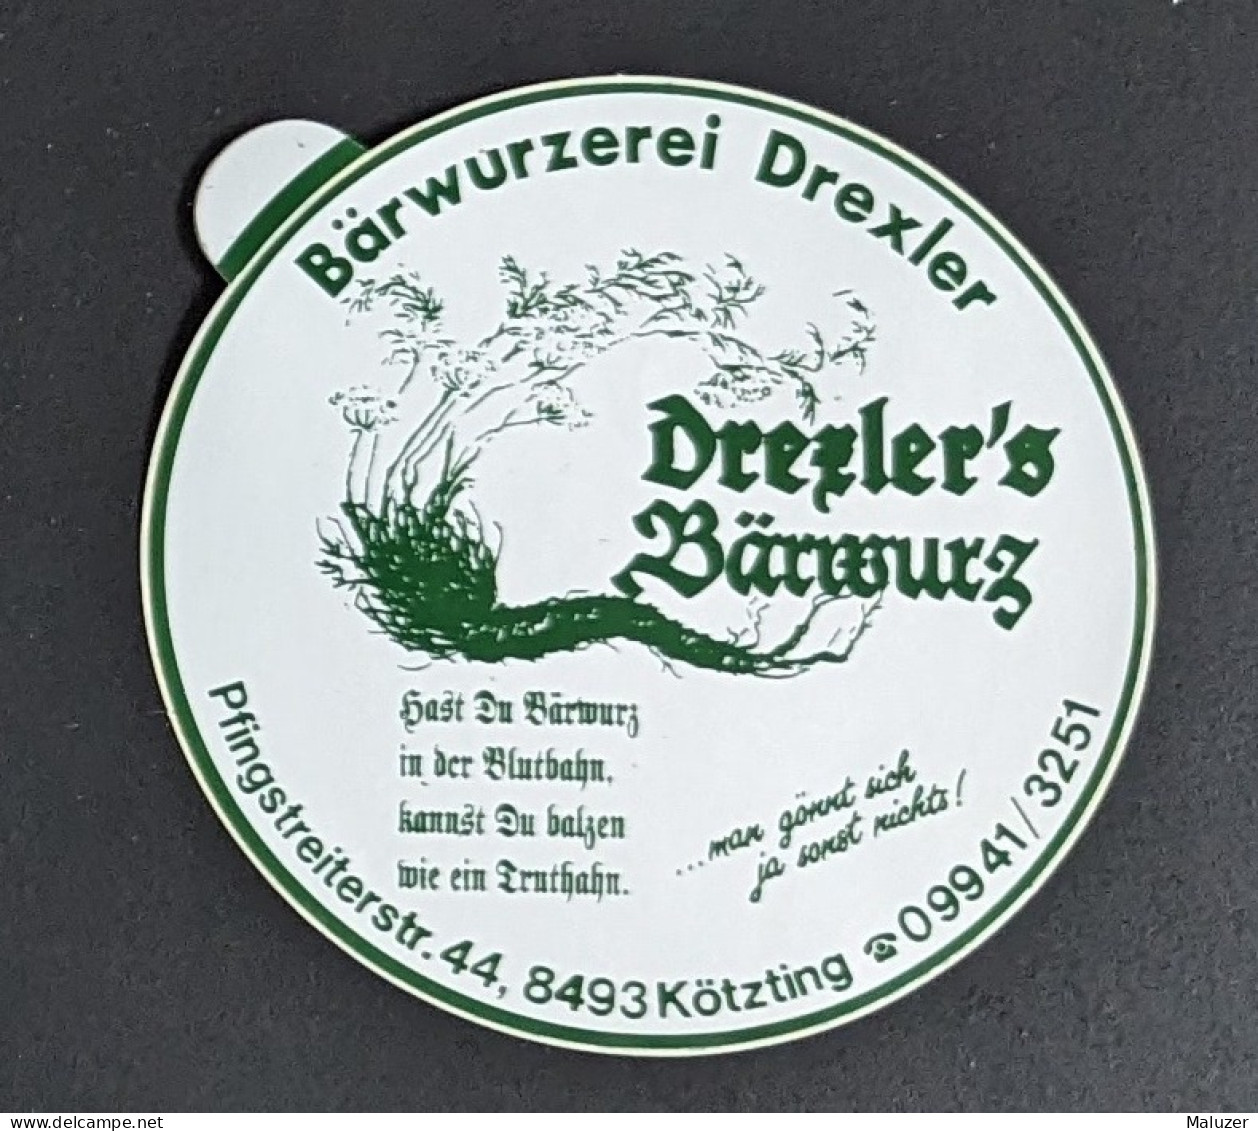 AUTOCOLLANT BARWURZEREI DEXLER - BARWURZ - KÖTZTING - ALLEMAGNE DEUTSCHLAND GERMANY - BAR CAFÉ - Aufkleber